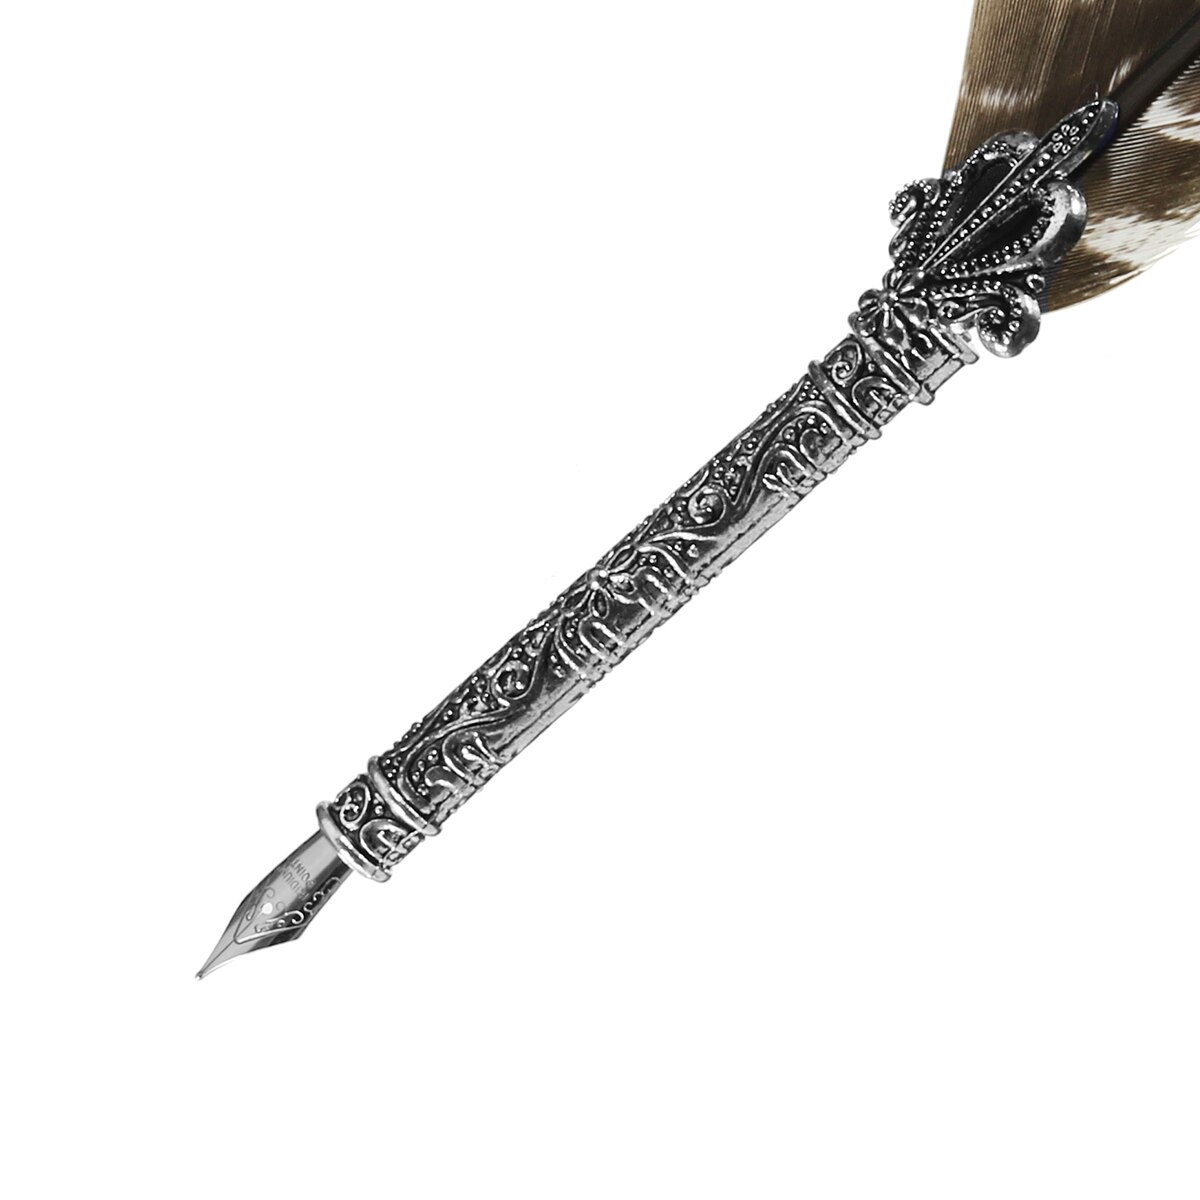 Kicute Vintage Vulpen Feather Quill Pen Metalen Penpunten Dip Schrijven Zwarte Inkt Set Briefpapier Met 5 Nib Collectable Levert